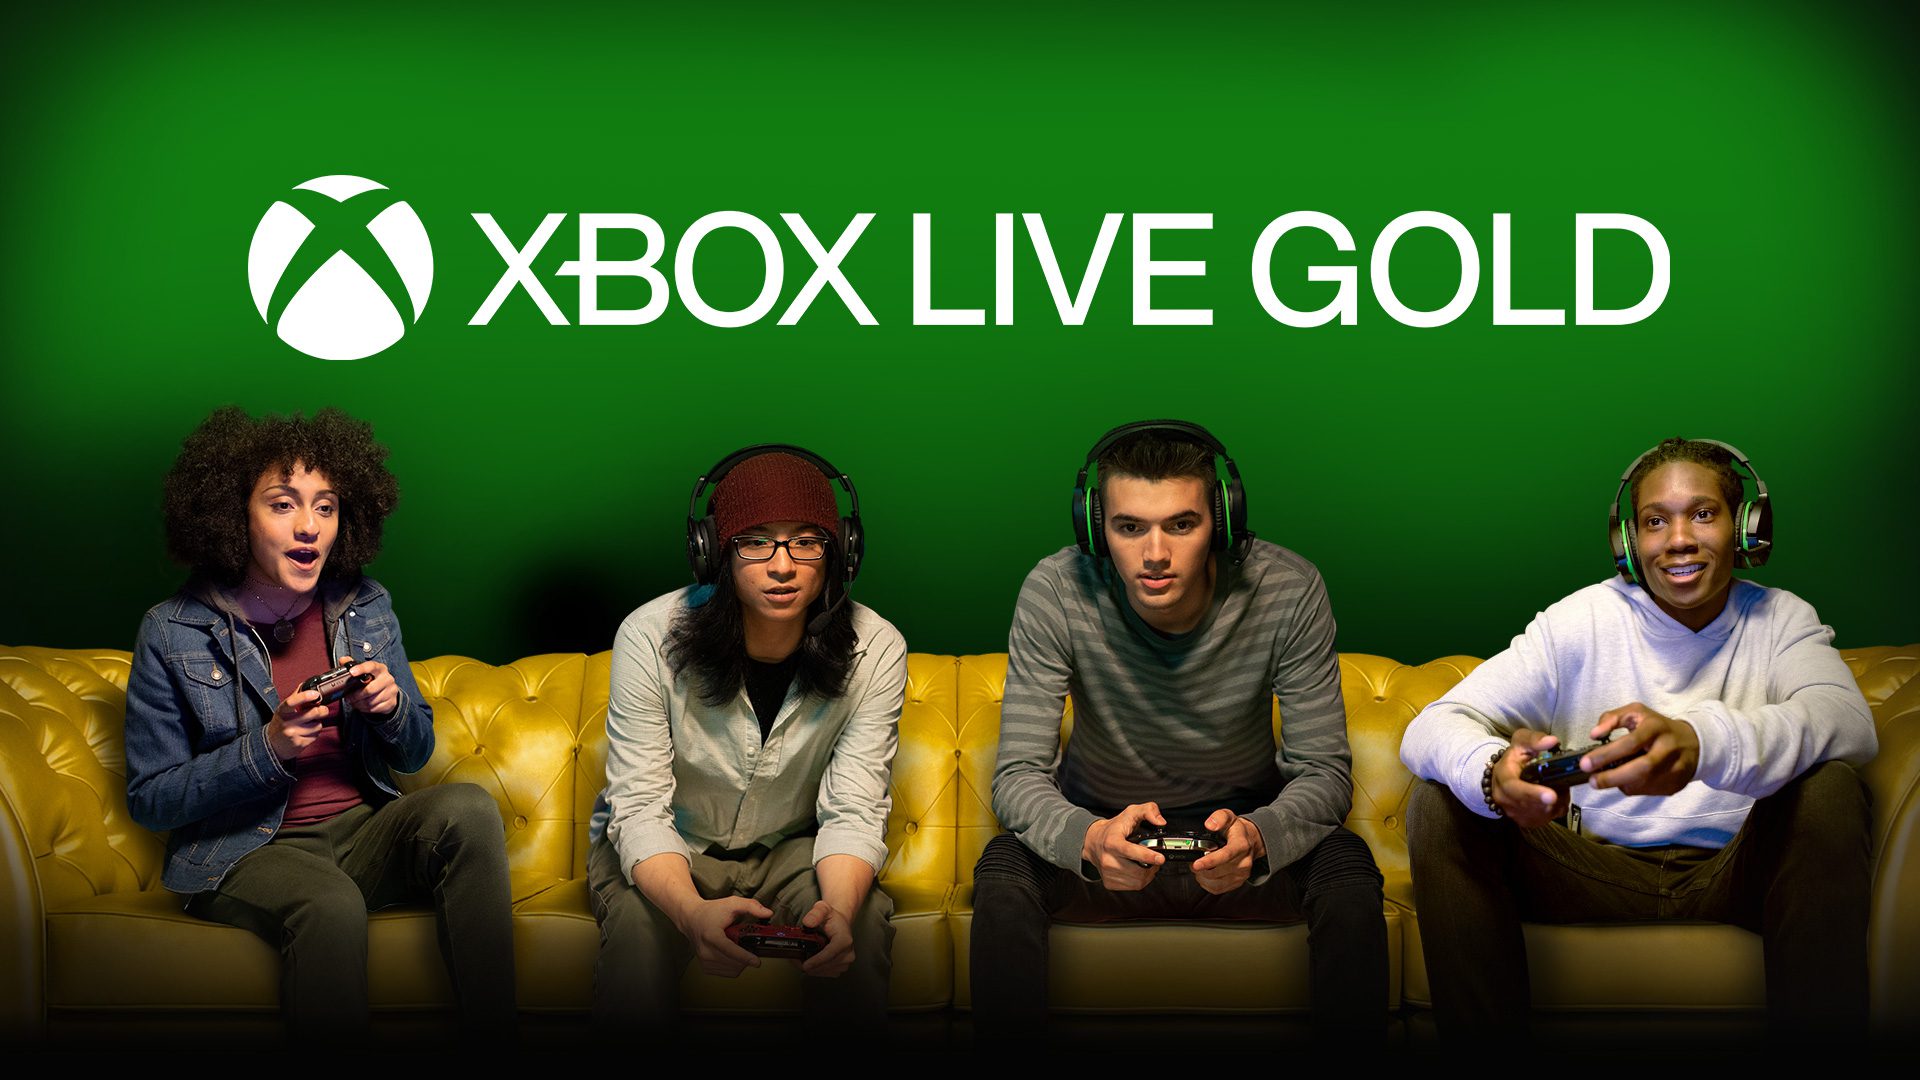 ایکس باکس لایو گلد (Xbox Live Gold) و مزایایی آن